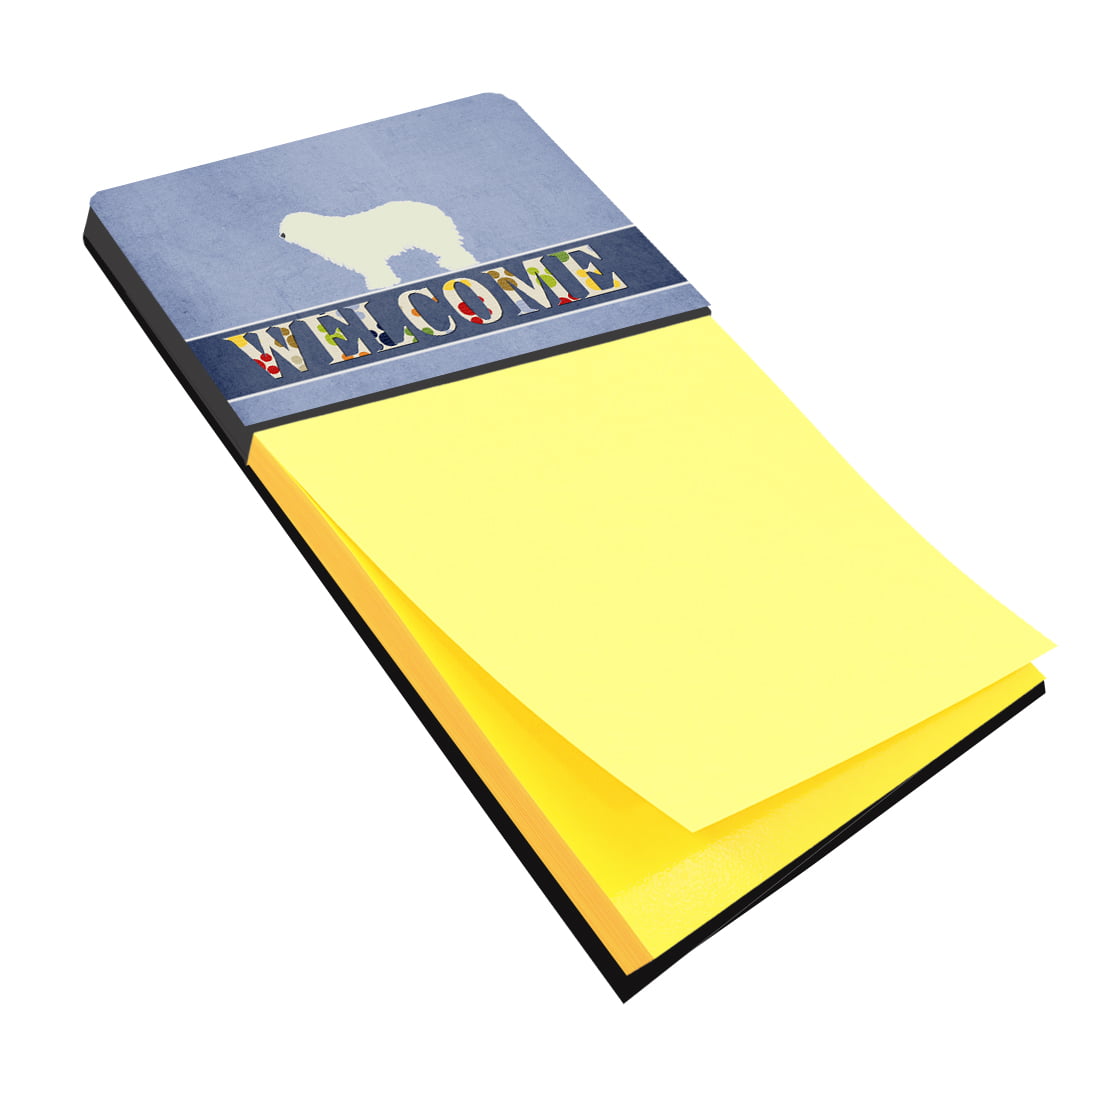 Bb5559sn Komondor Welcome Sticky Note Holder